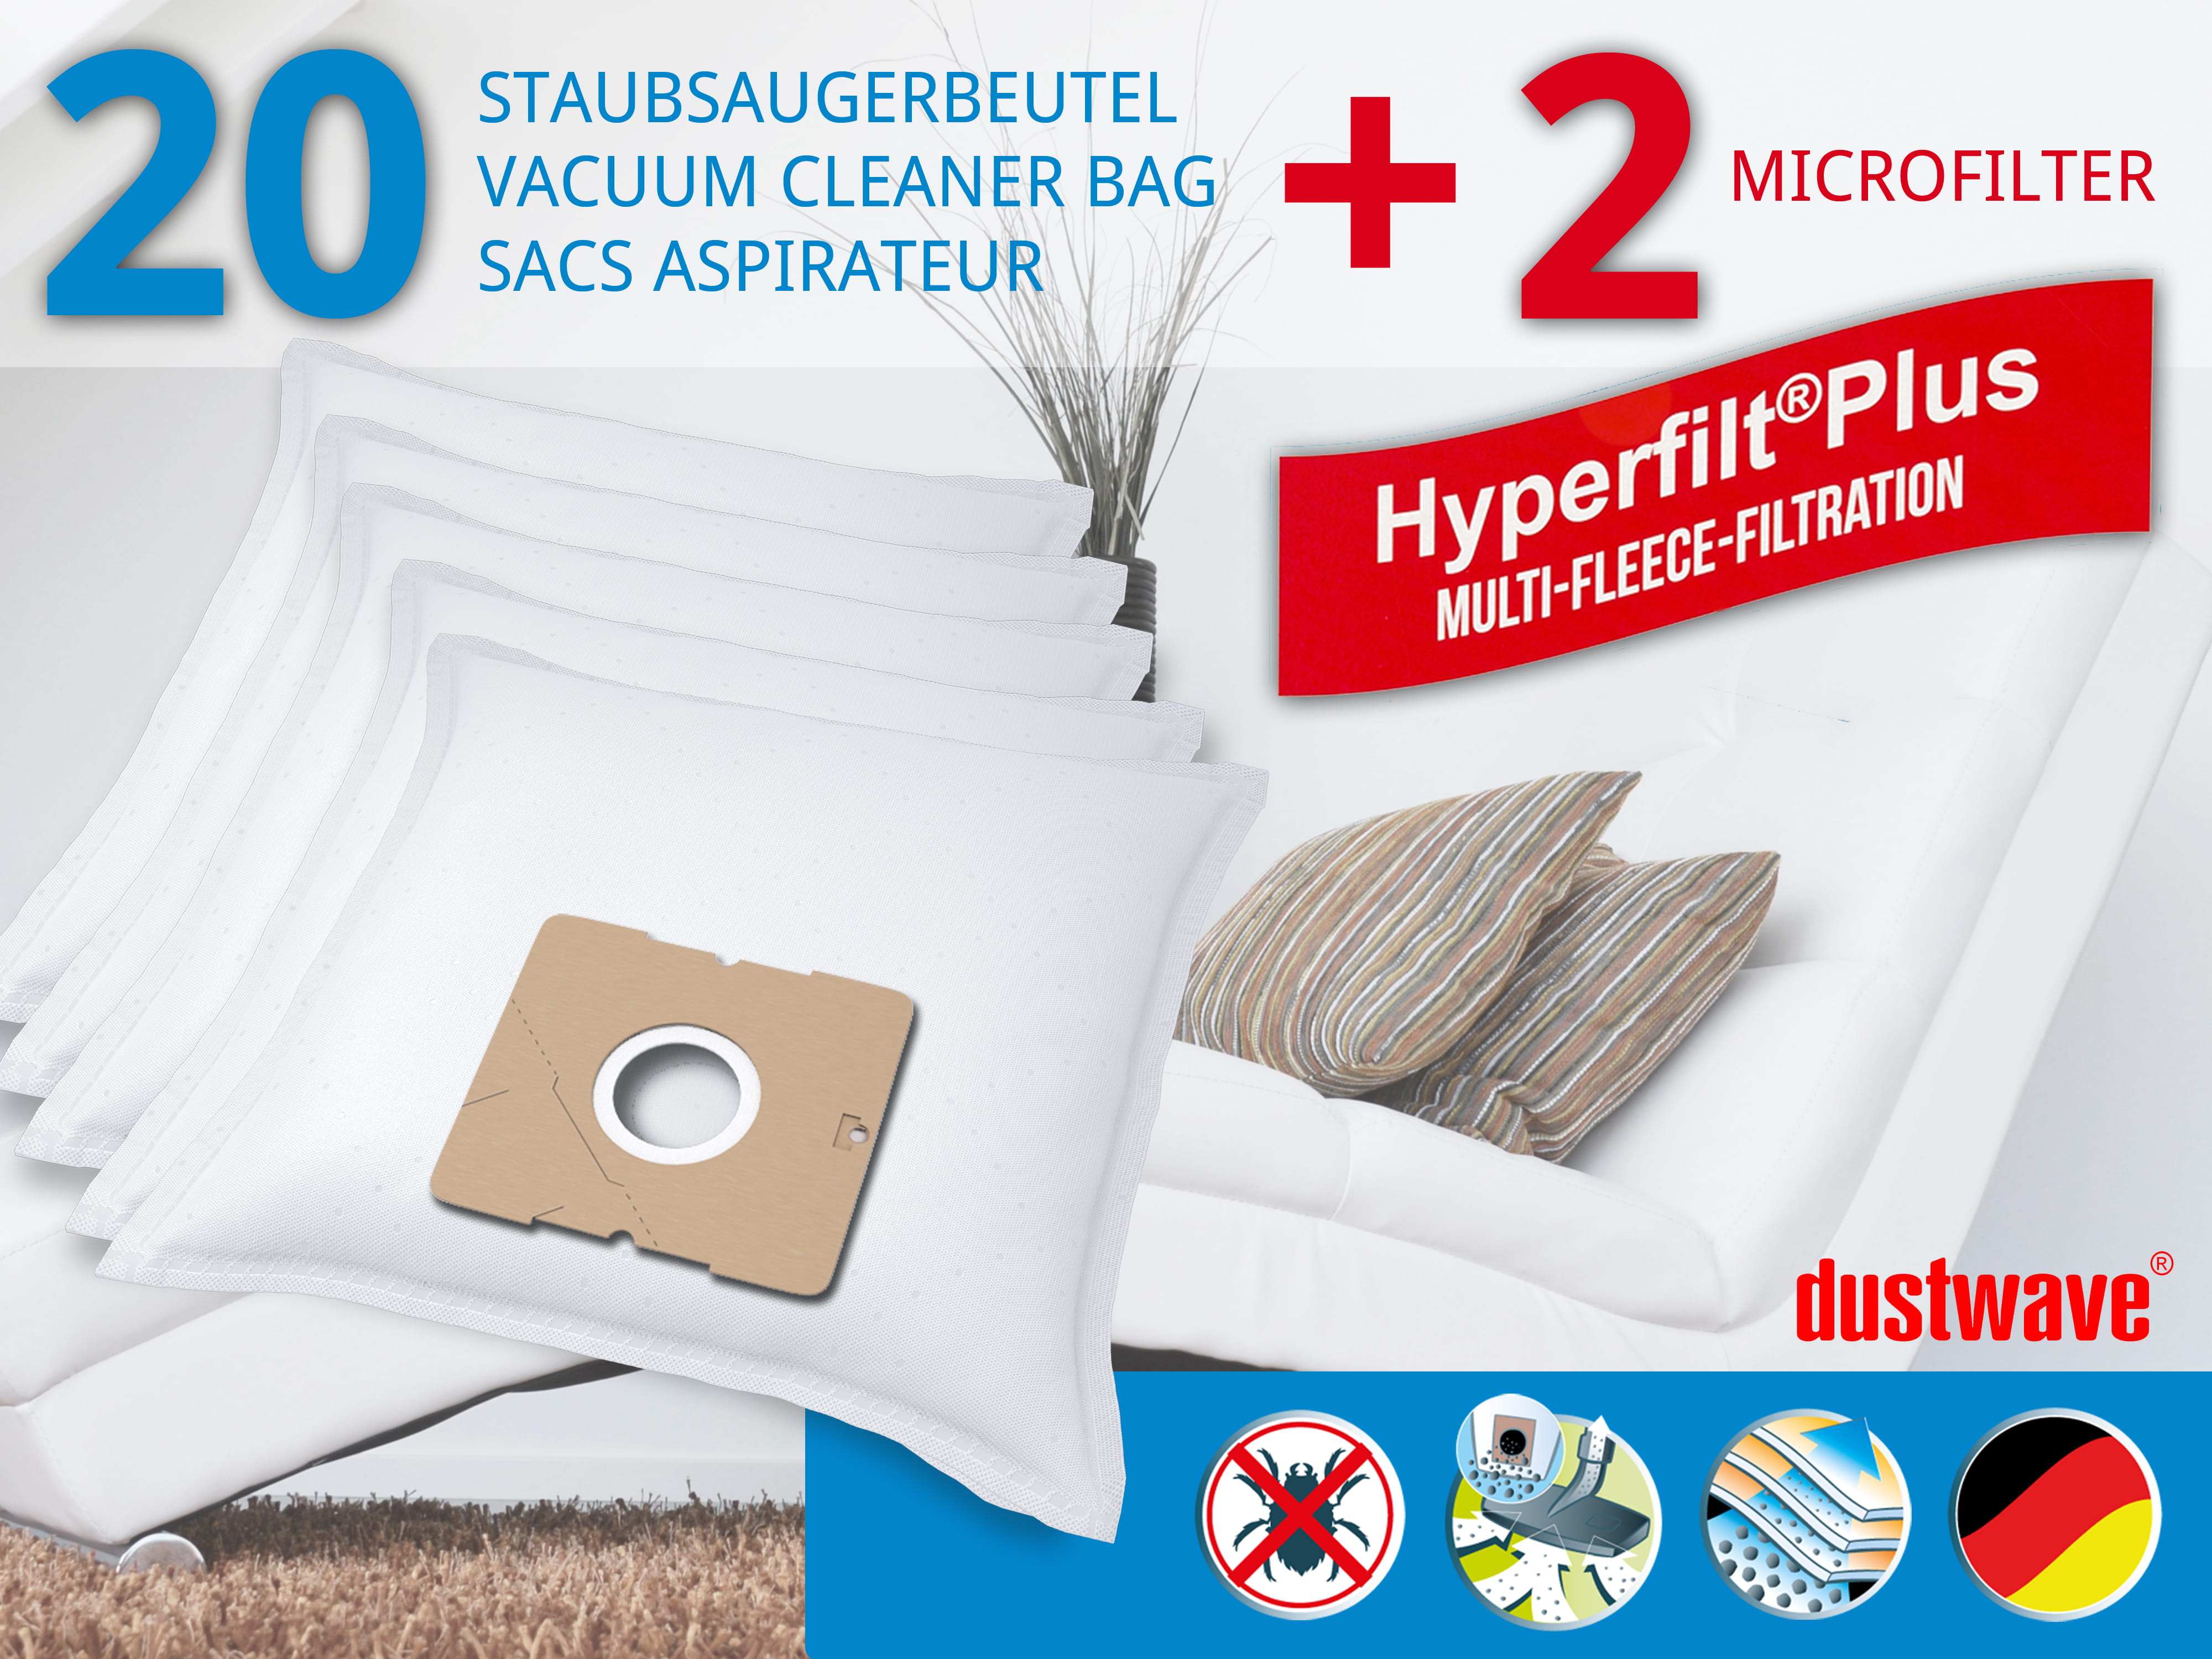 Dustwave® 20 Staubsaugerbeutel für AEG Smart 360 - hocheffizient mit Hygieneverschluss - Made in Germany